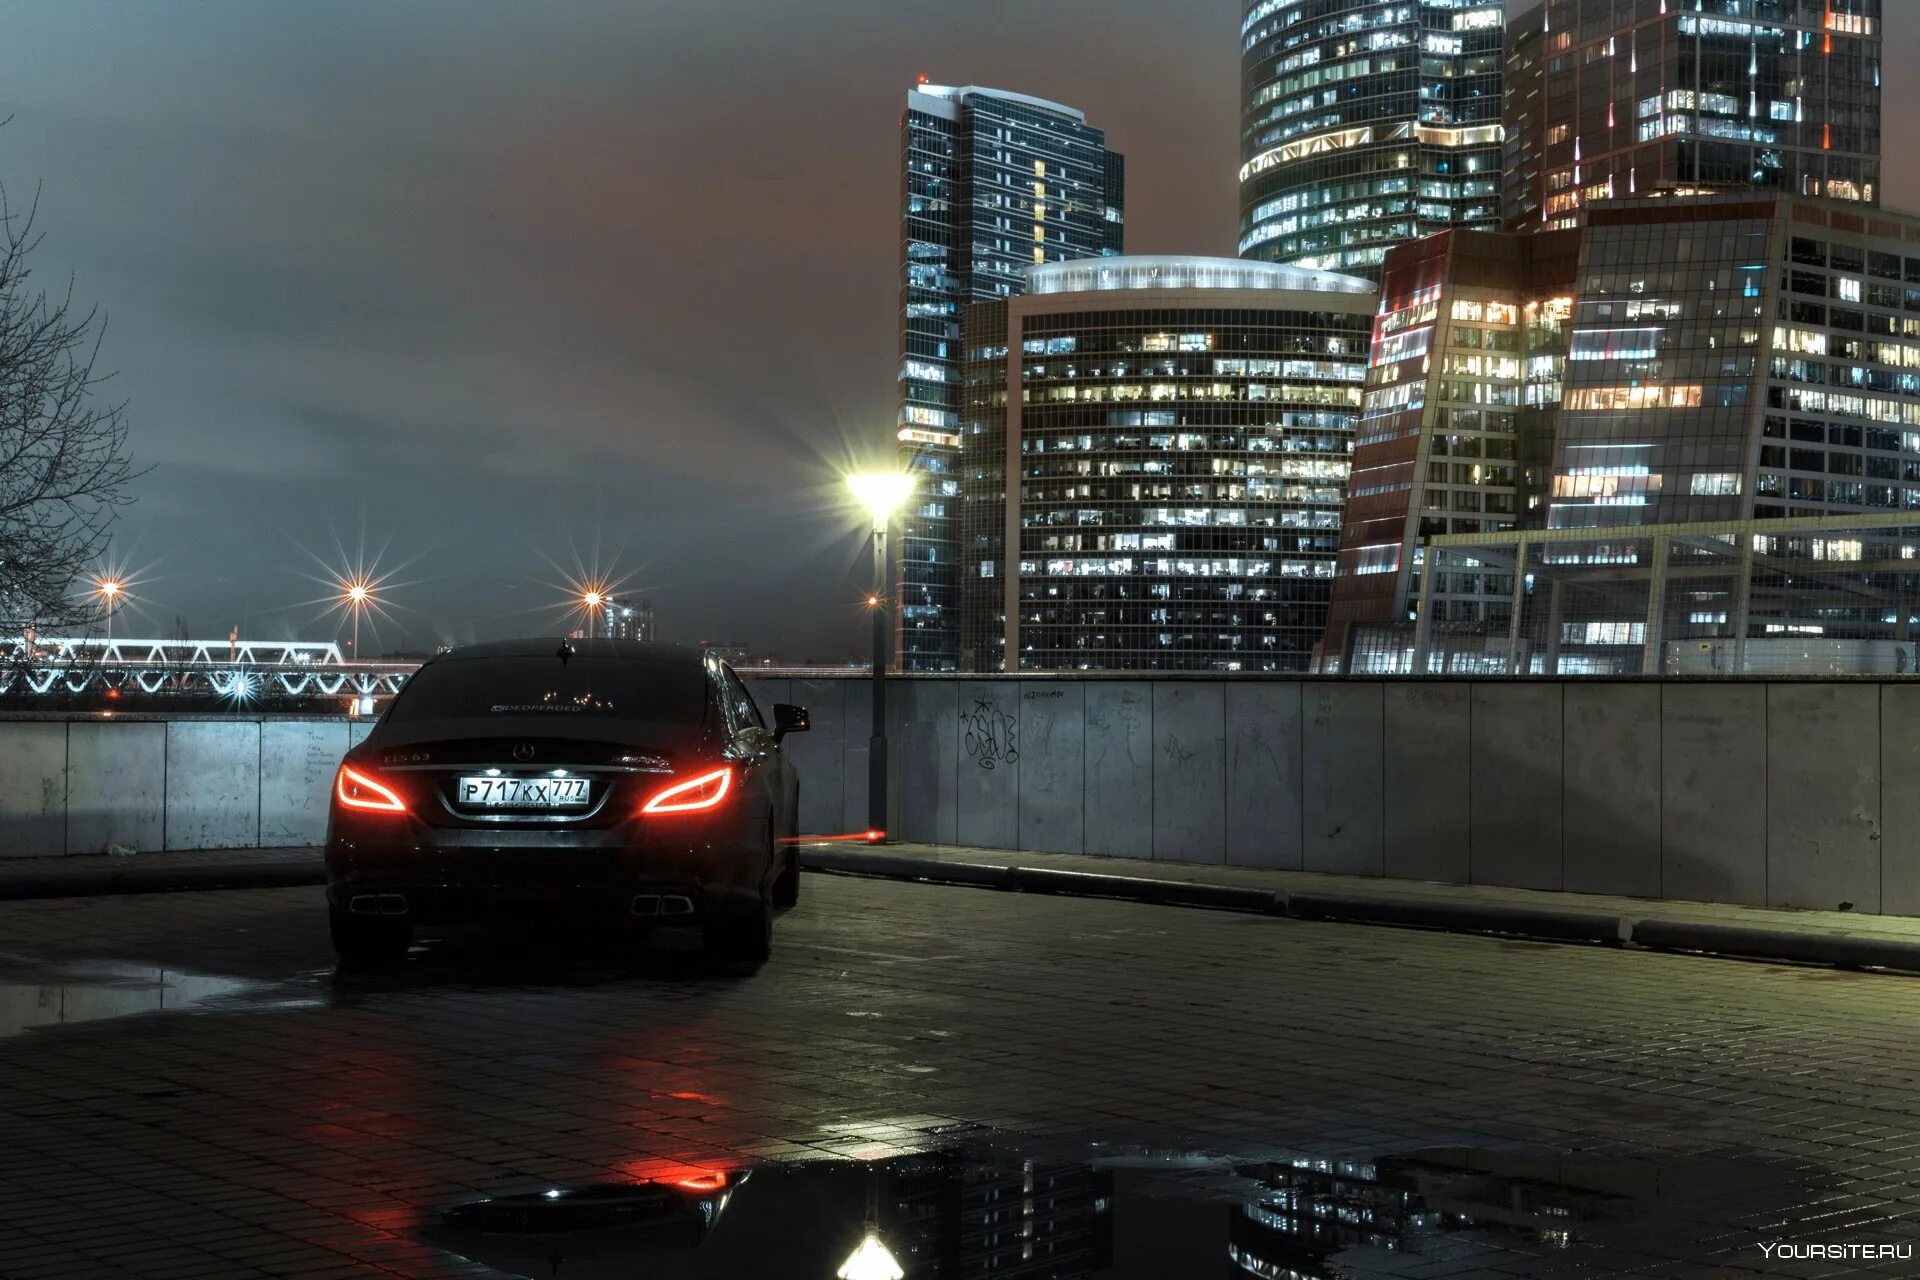 Mercedes Benz CLS 63 AMG ночью Москва. Мерседес АМГ С 63 В ночном городе. Москва ночь BMW f30. CLS 63 AMG ночью.